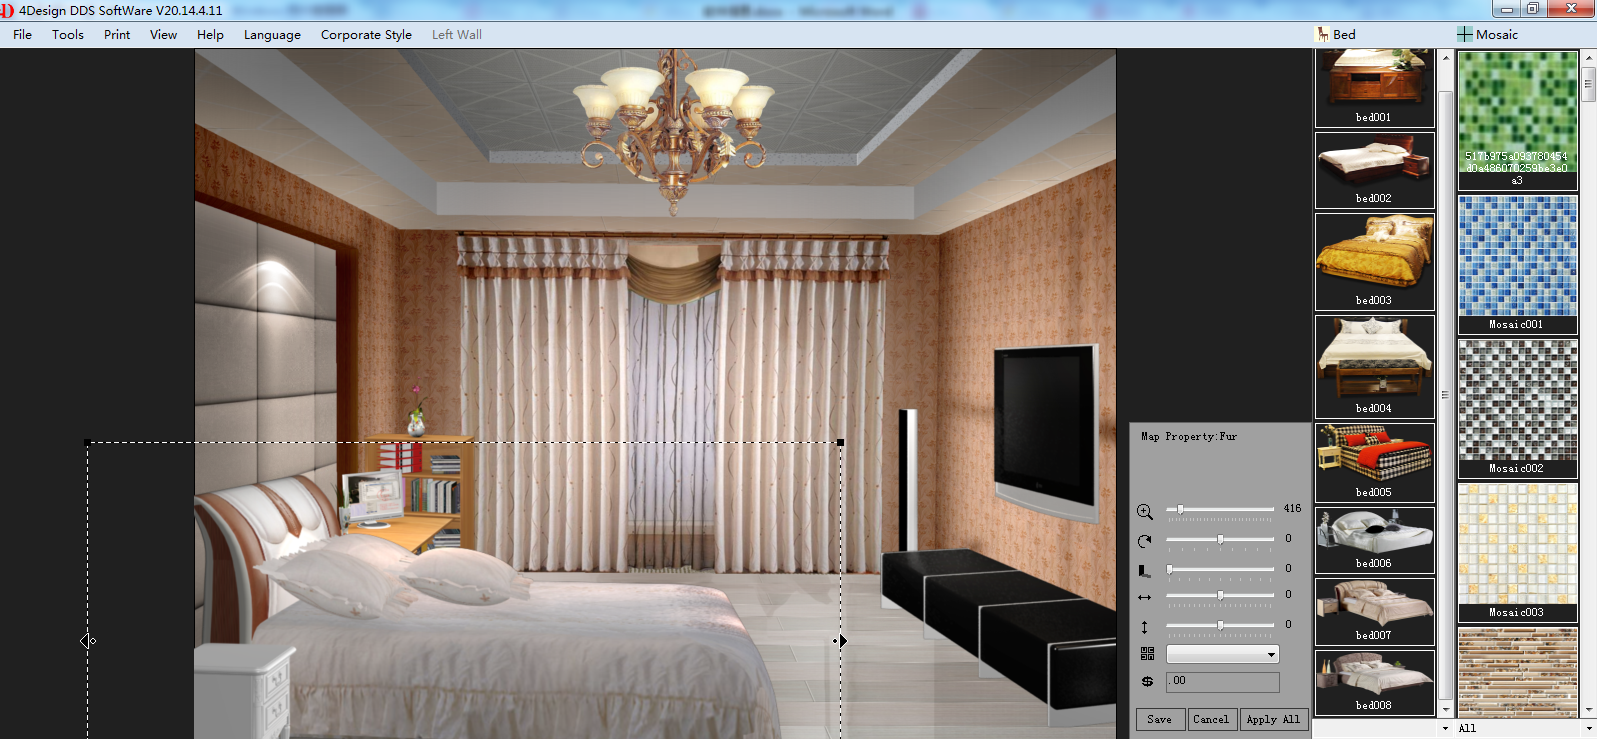 4Design Software for Furniture Display